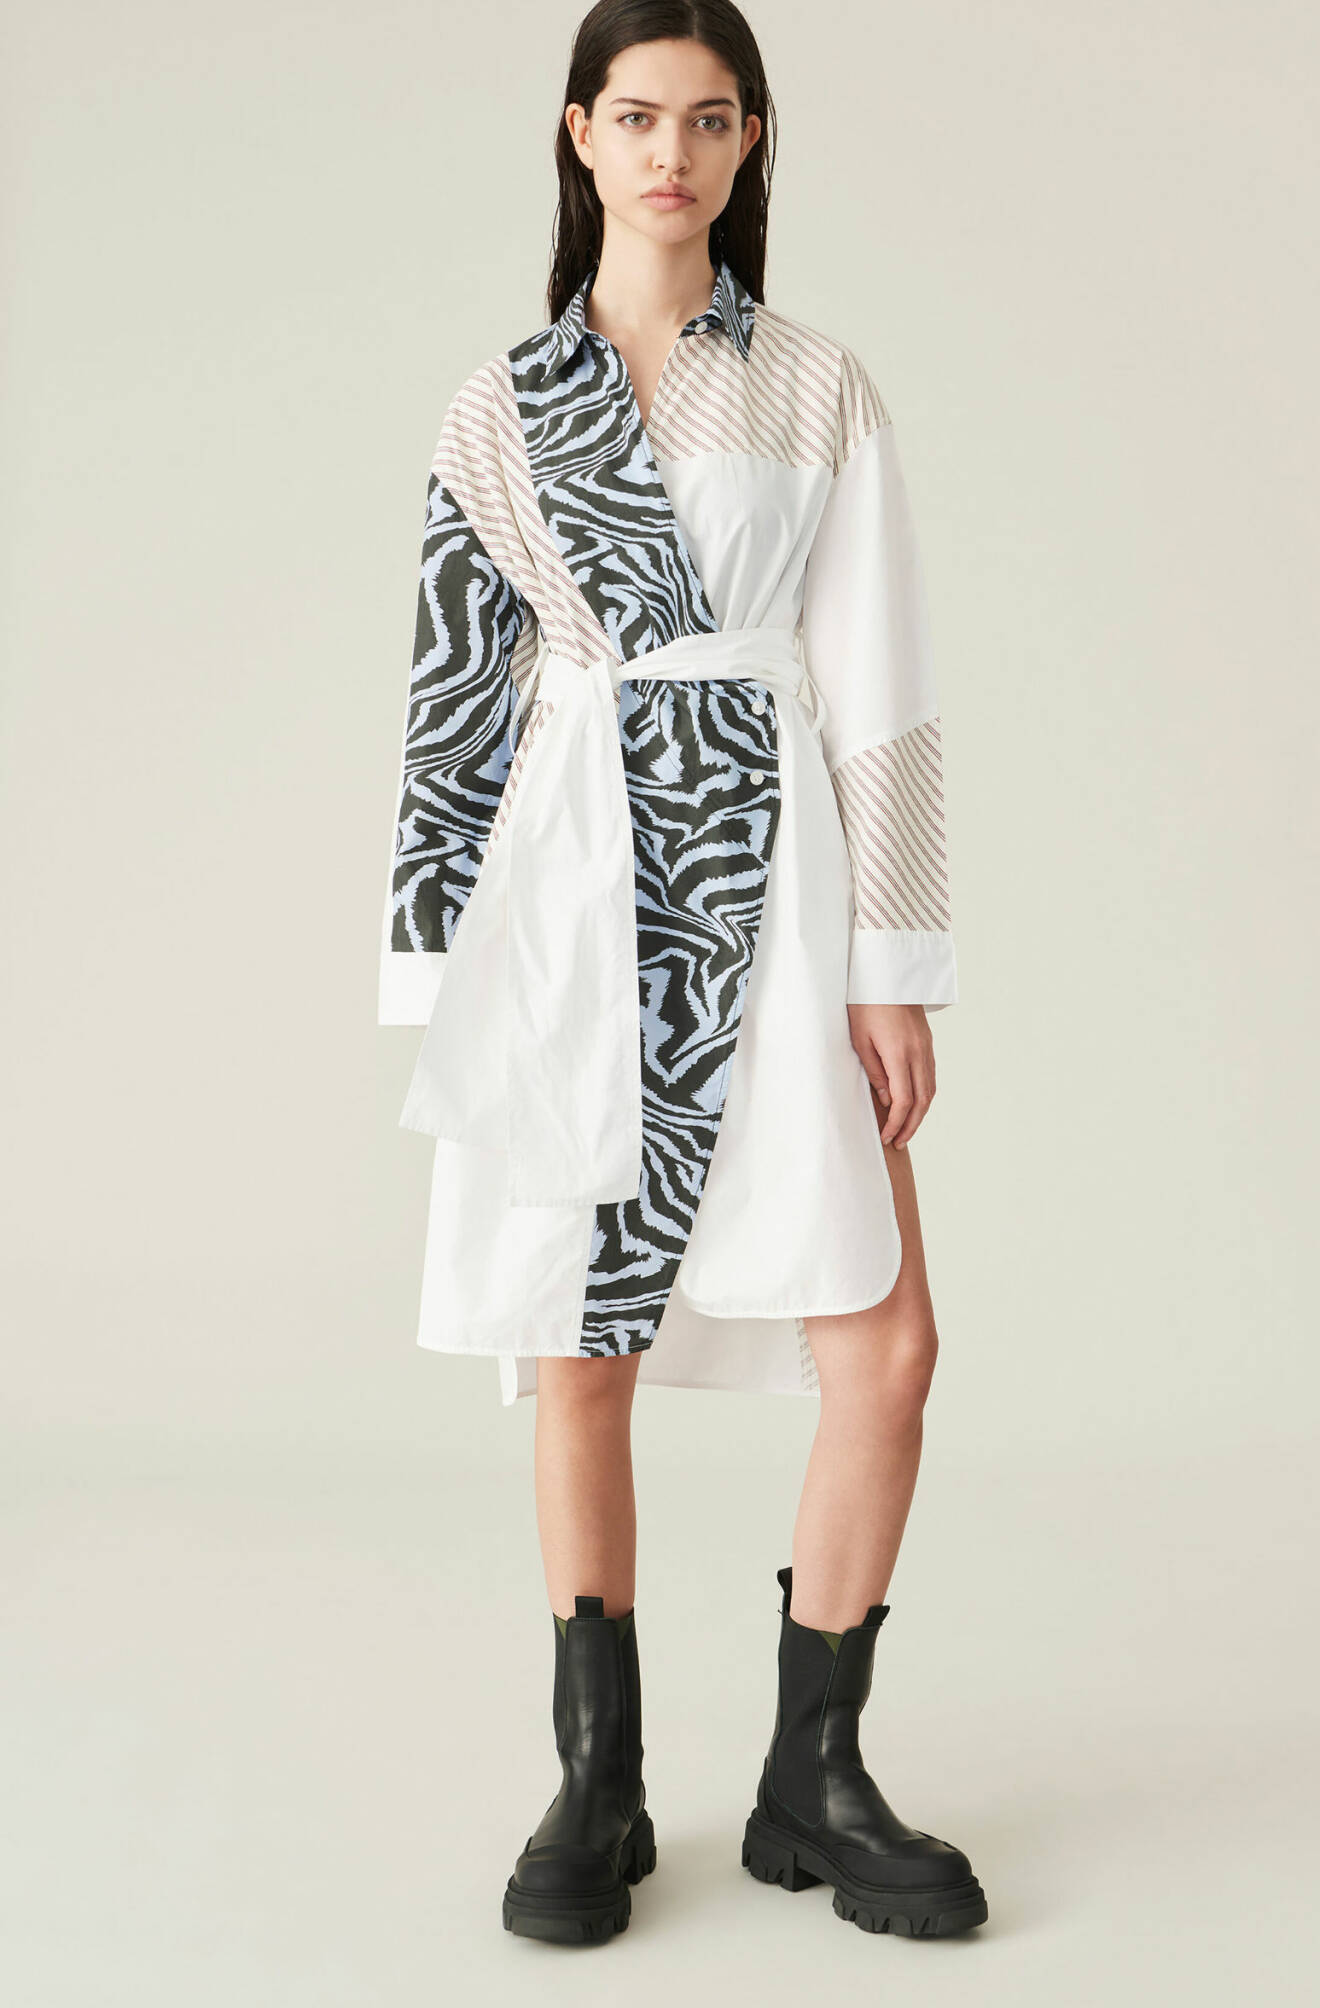 Modell i skjortklänning som är blockmönstrad i vitt, randigt och zebramönstrat. Skjortklänning från Ganni.